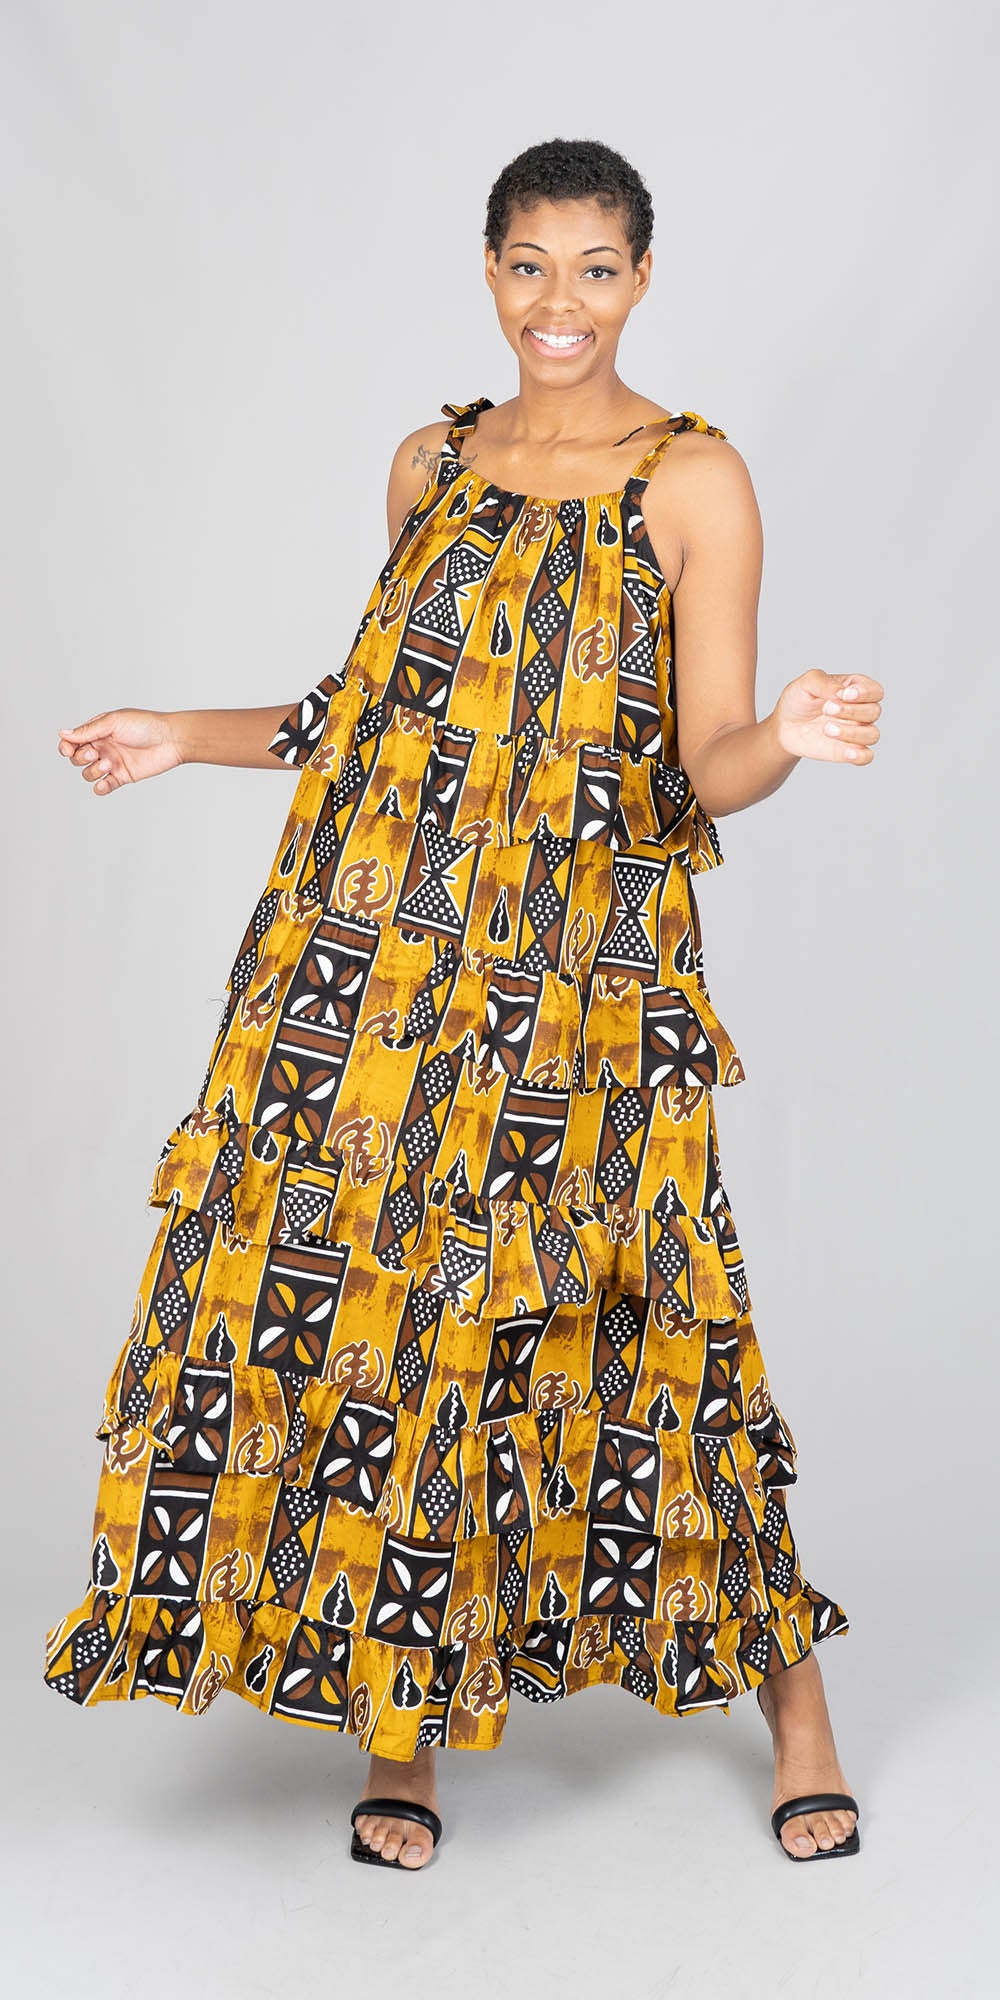 KaraChic 7757-587 - Tiered African Print Dress